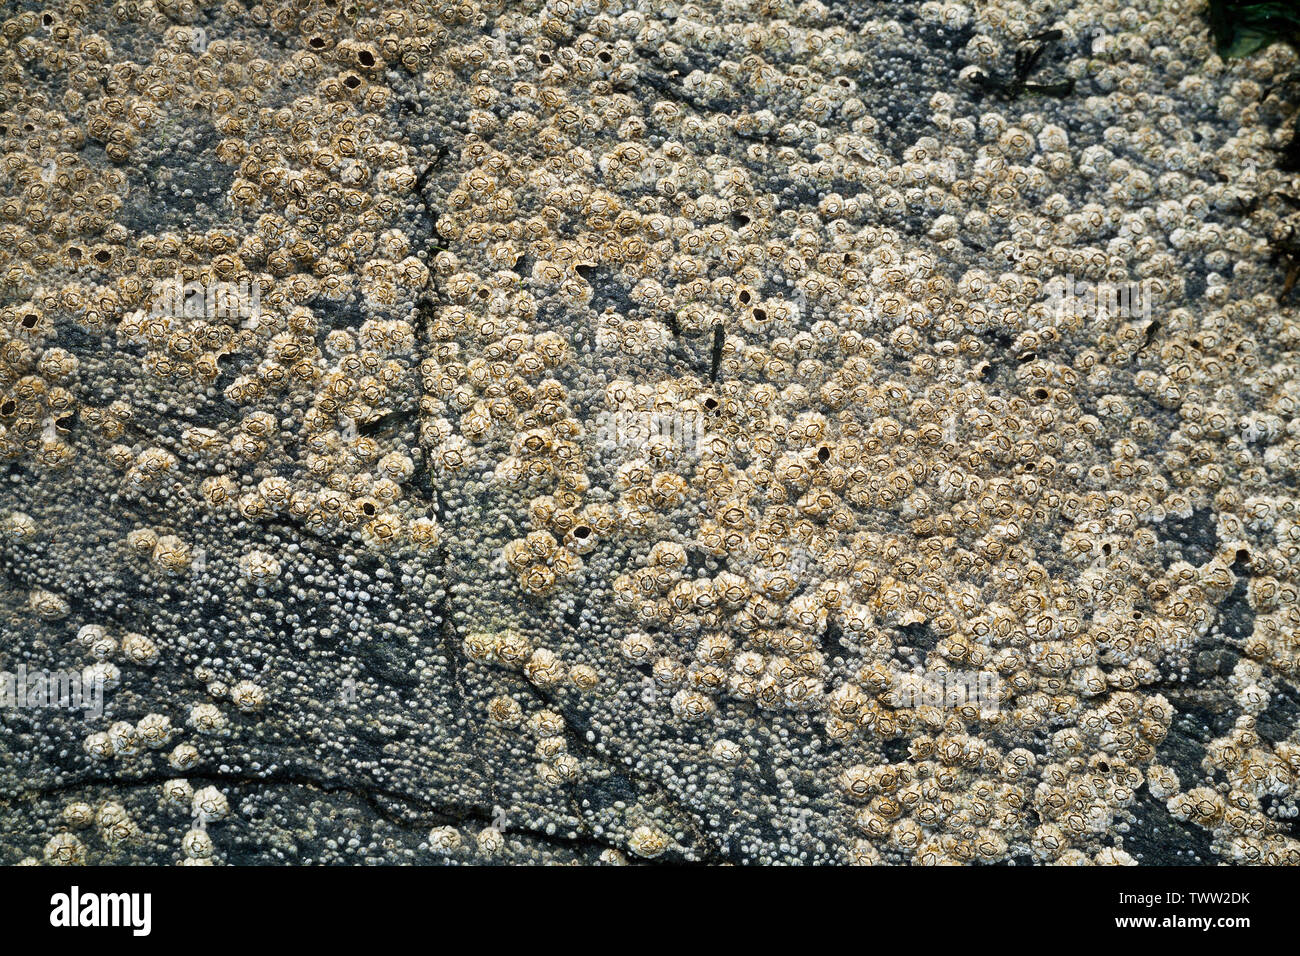 Acorn barnacles, Balanus balanoides, incrostati su rocce costiere, Scotland, Regno Unito Foto Stock